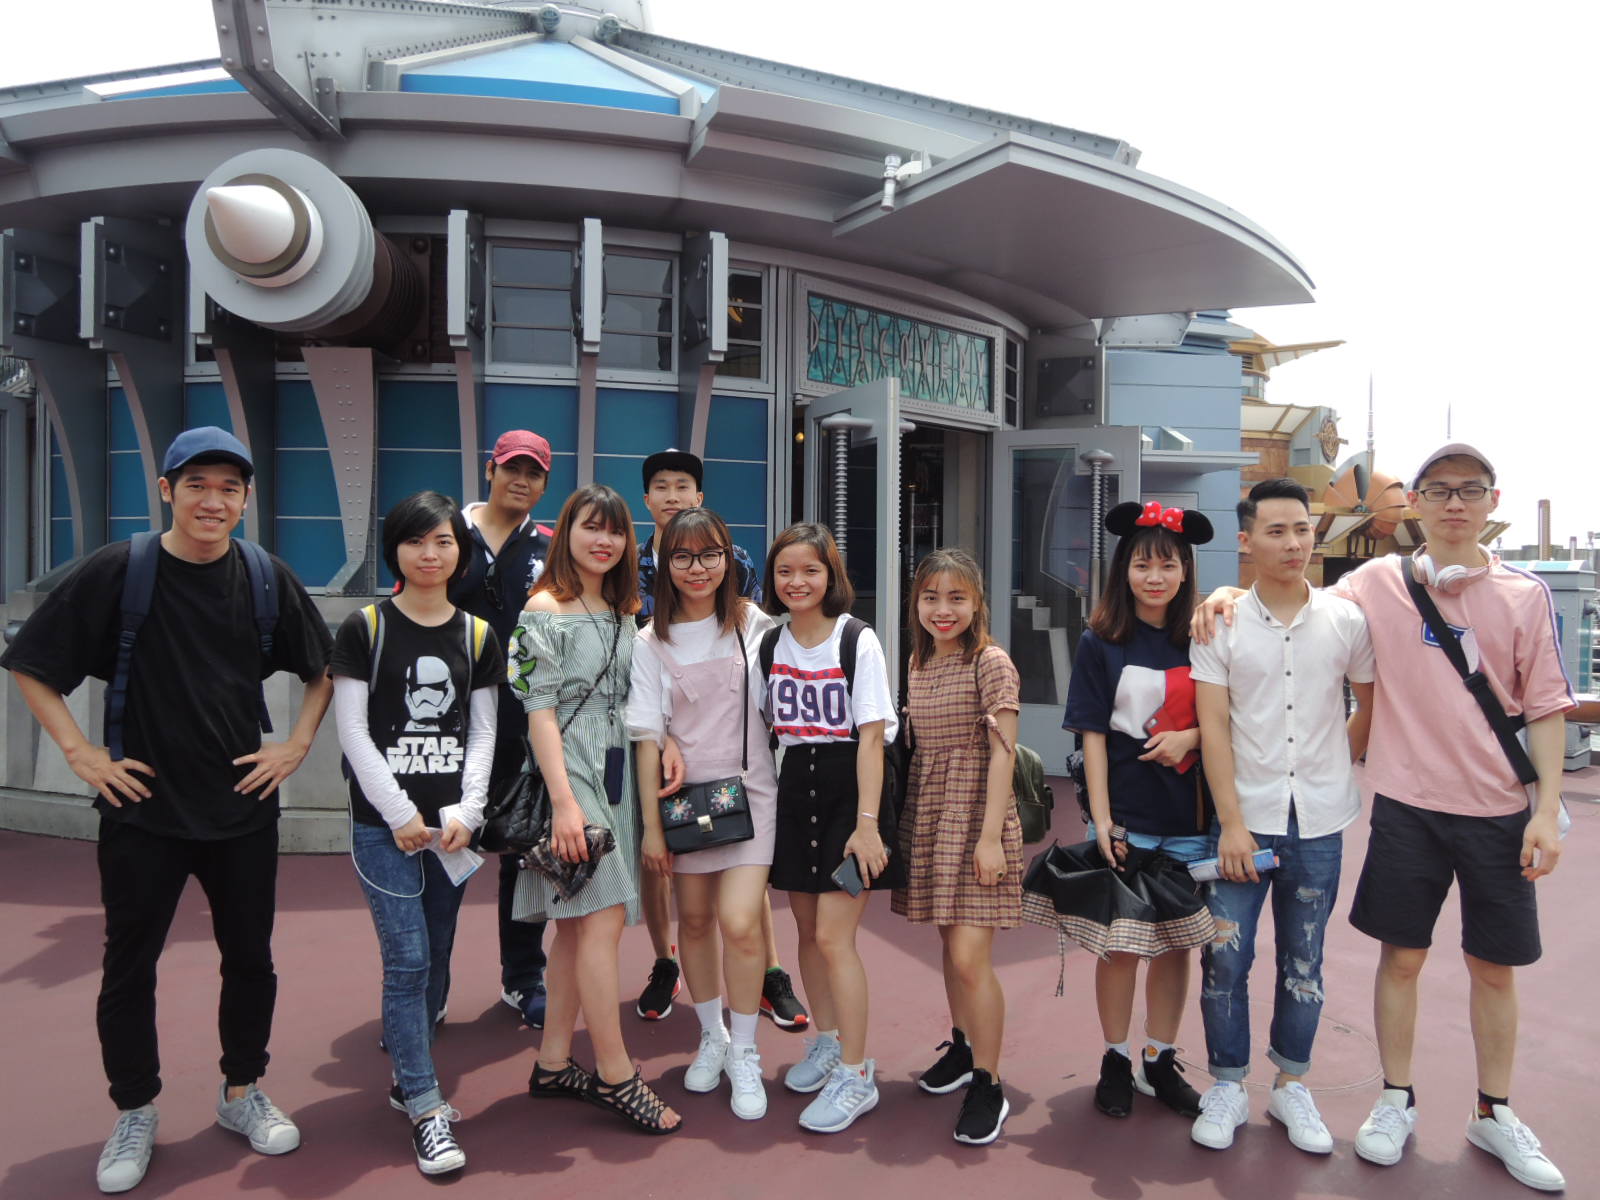 2018/06  課外授業で東京ディズニーシーに行きました   School trip in  2018: We traveled to Tokyo Disneysea 